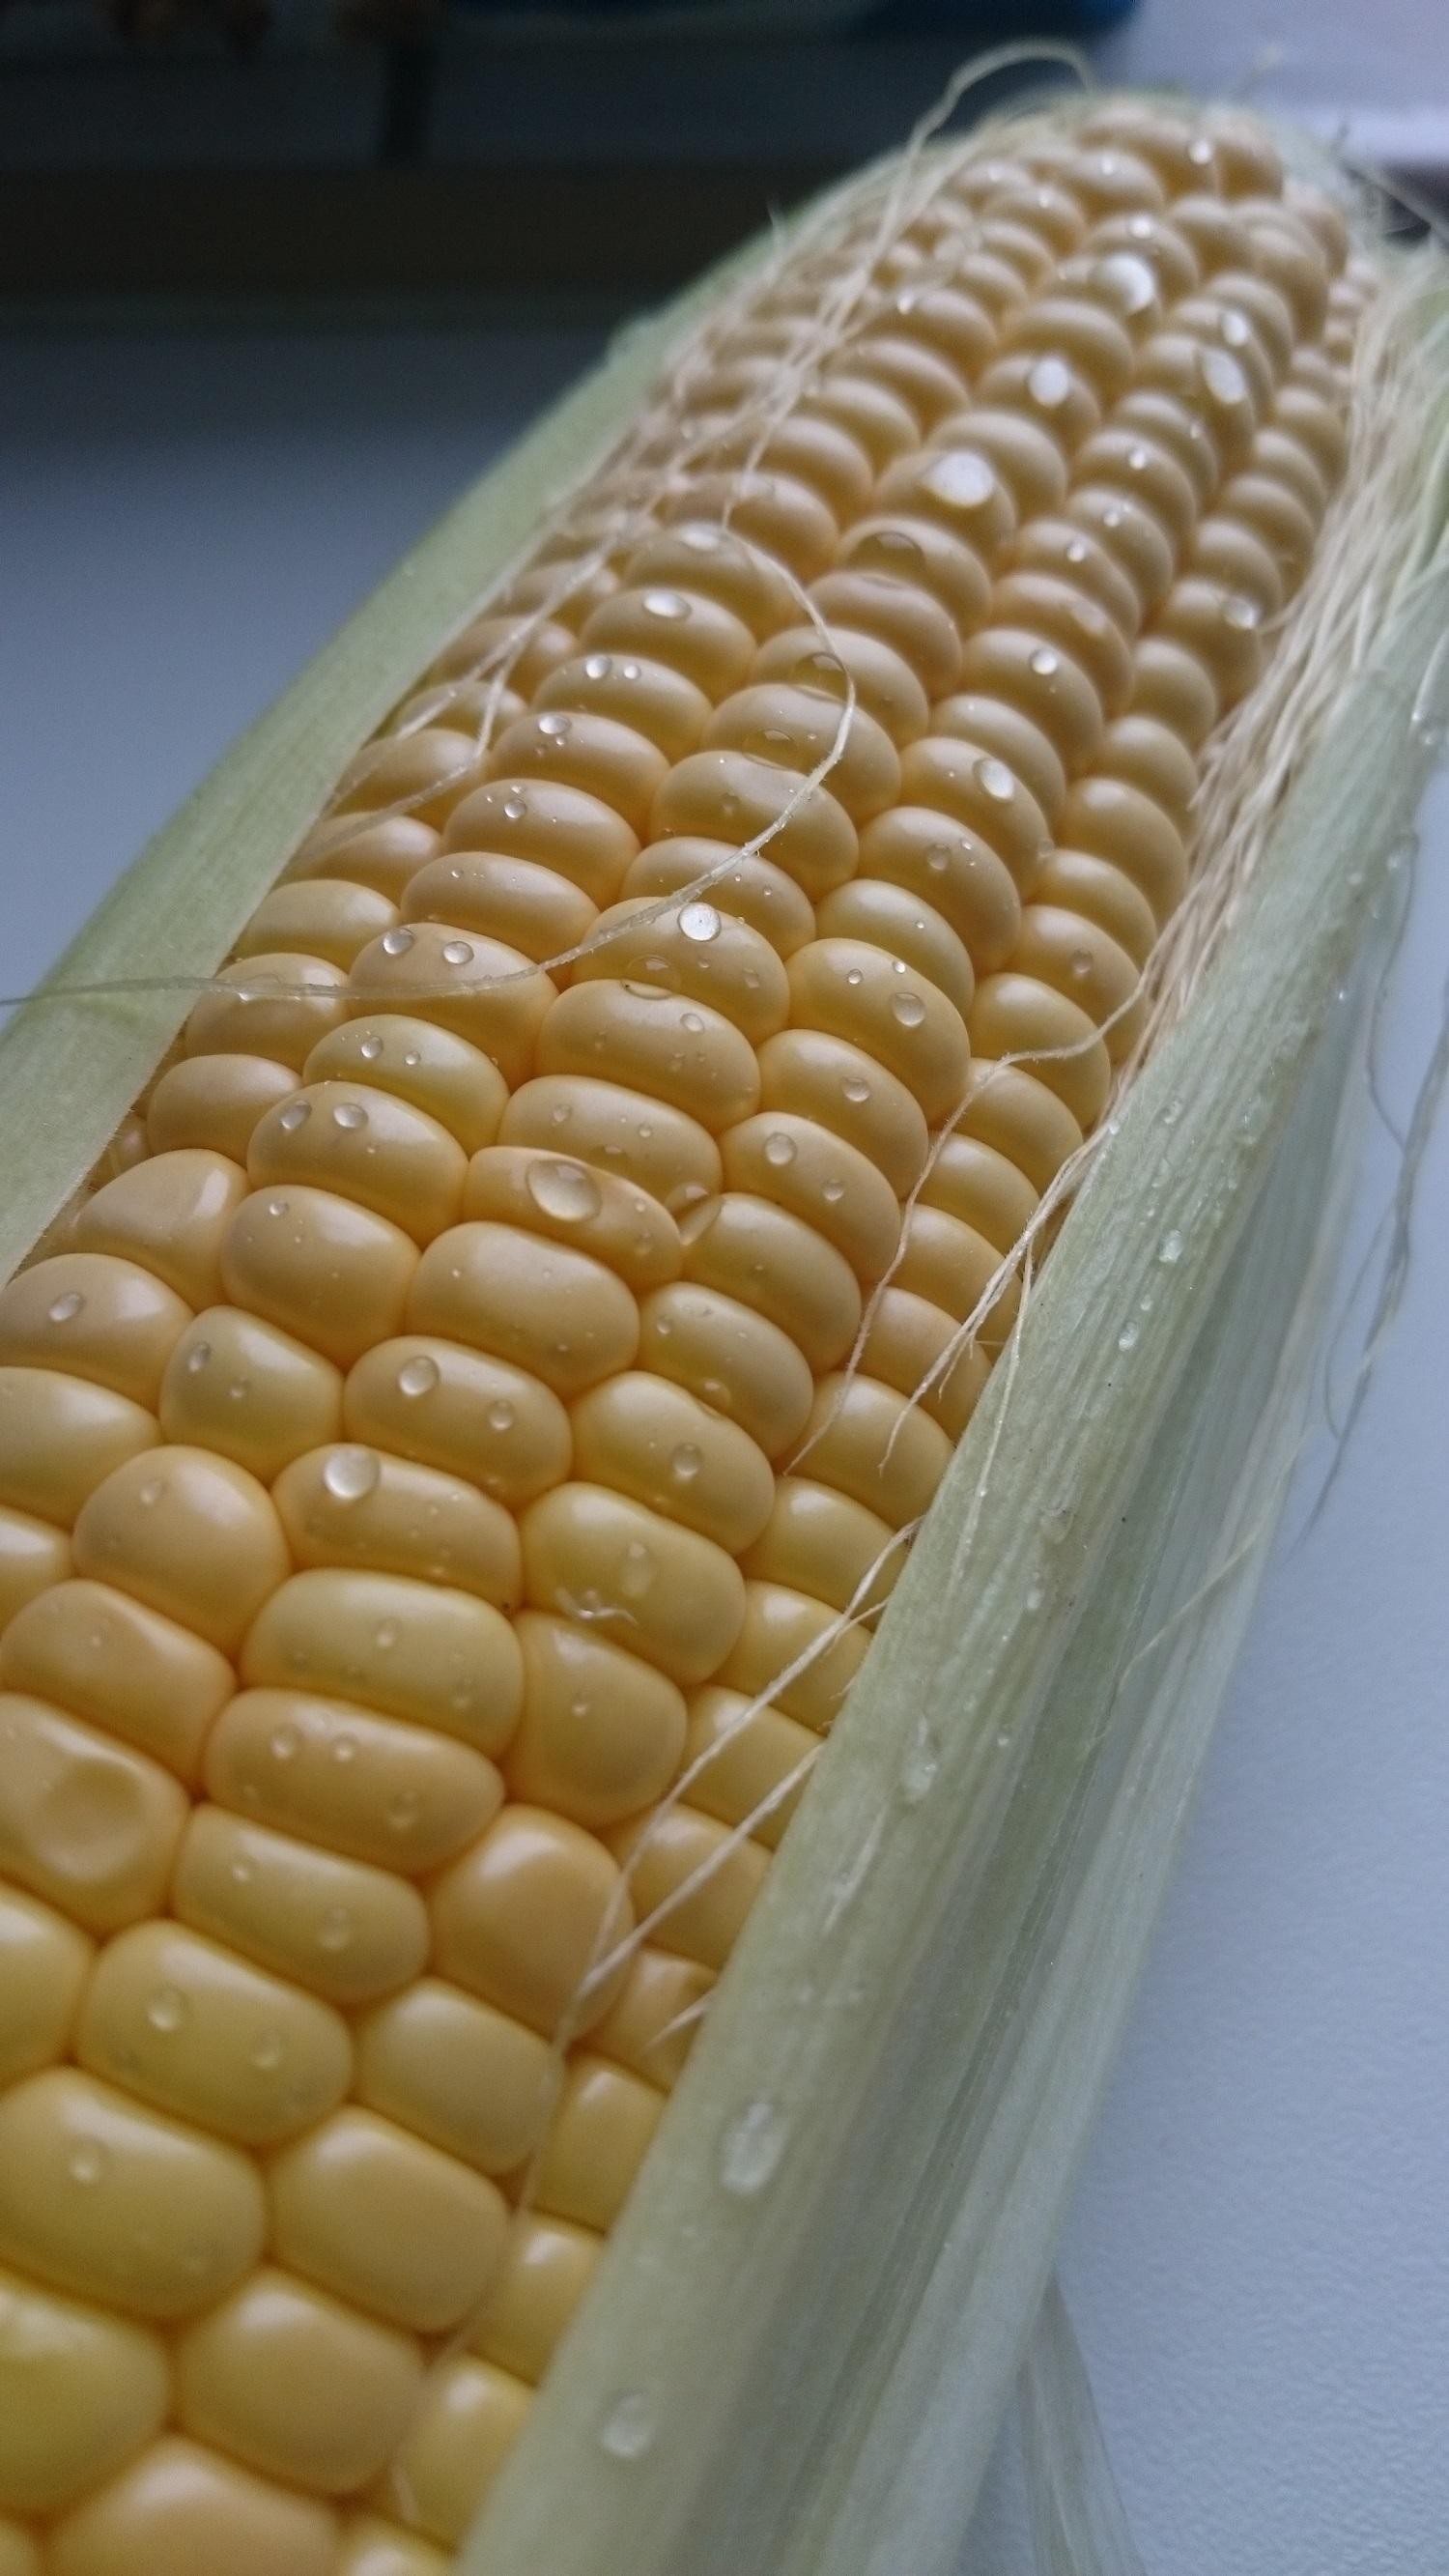 Jak sprawdzić czy kukurydza jest świeża?